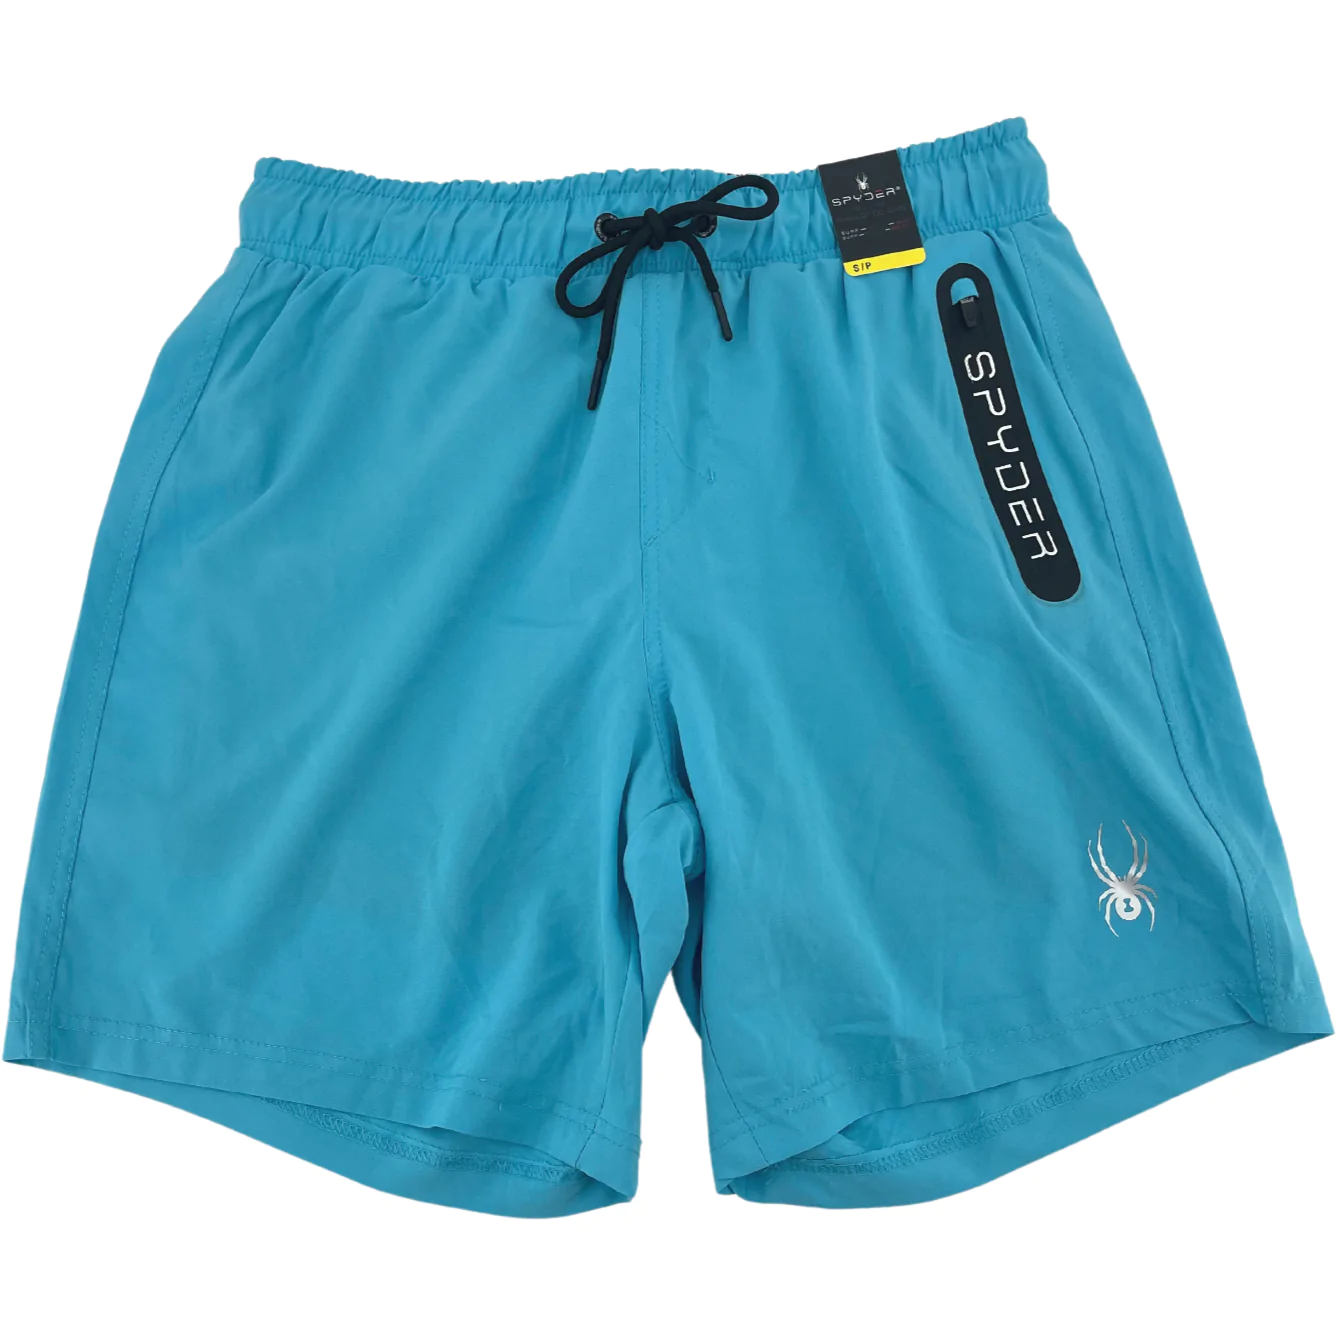 Spyder Men's Swim Trunks / Men's Swim Shorts / Blue / Various Sizes